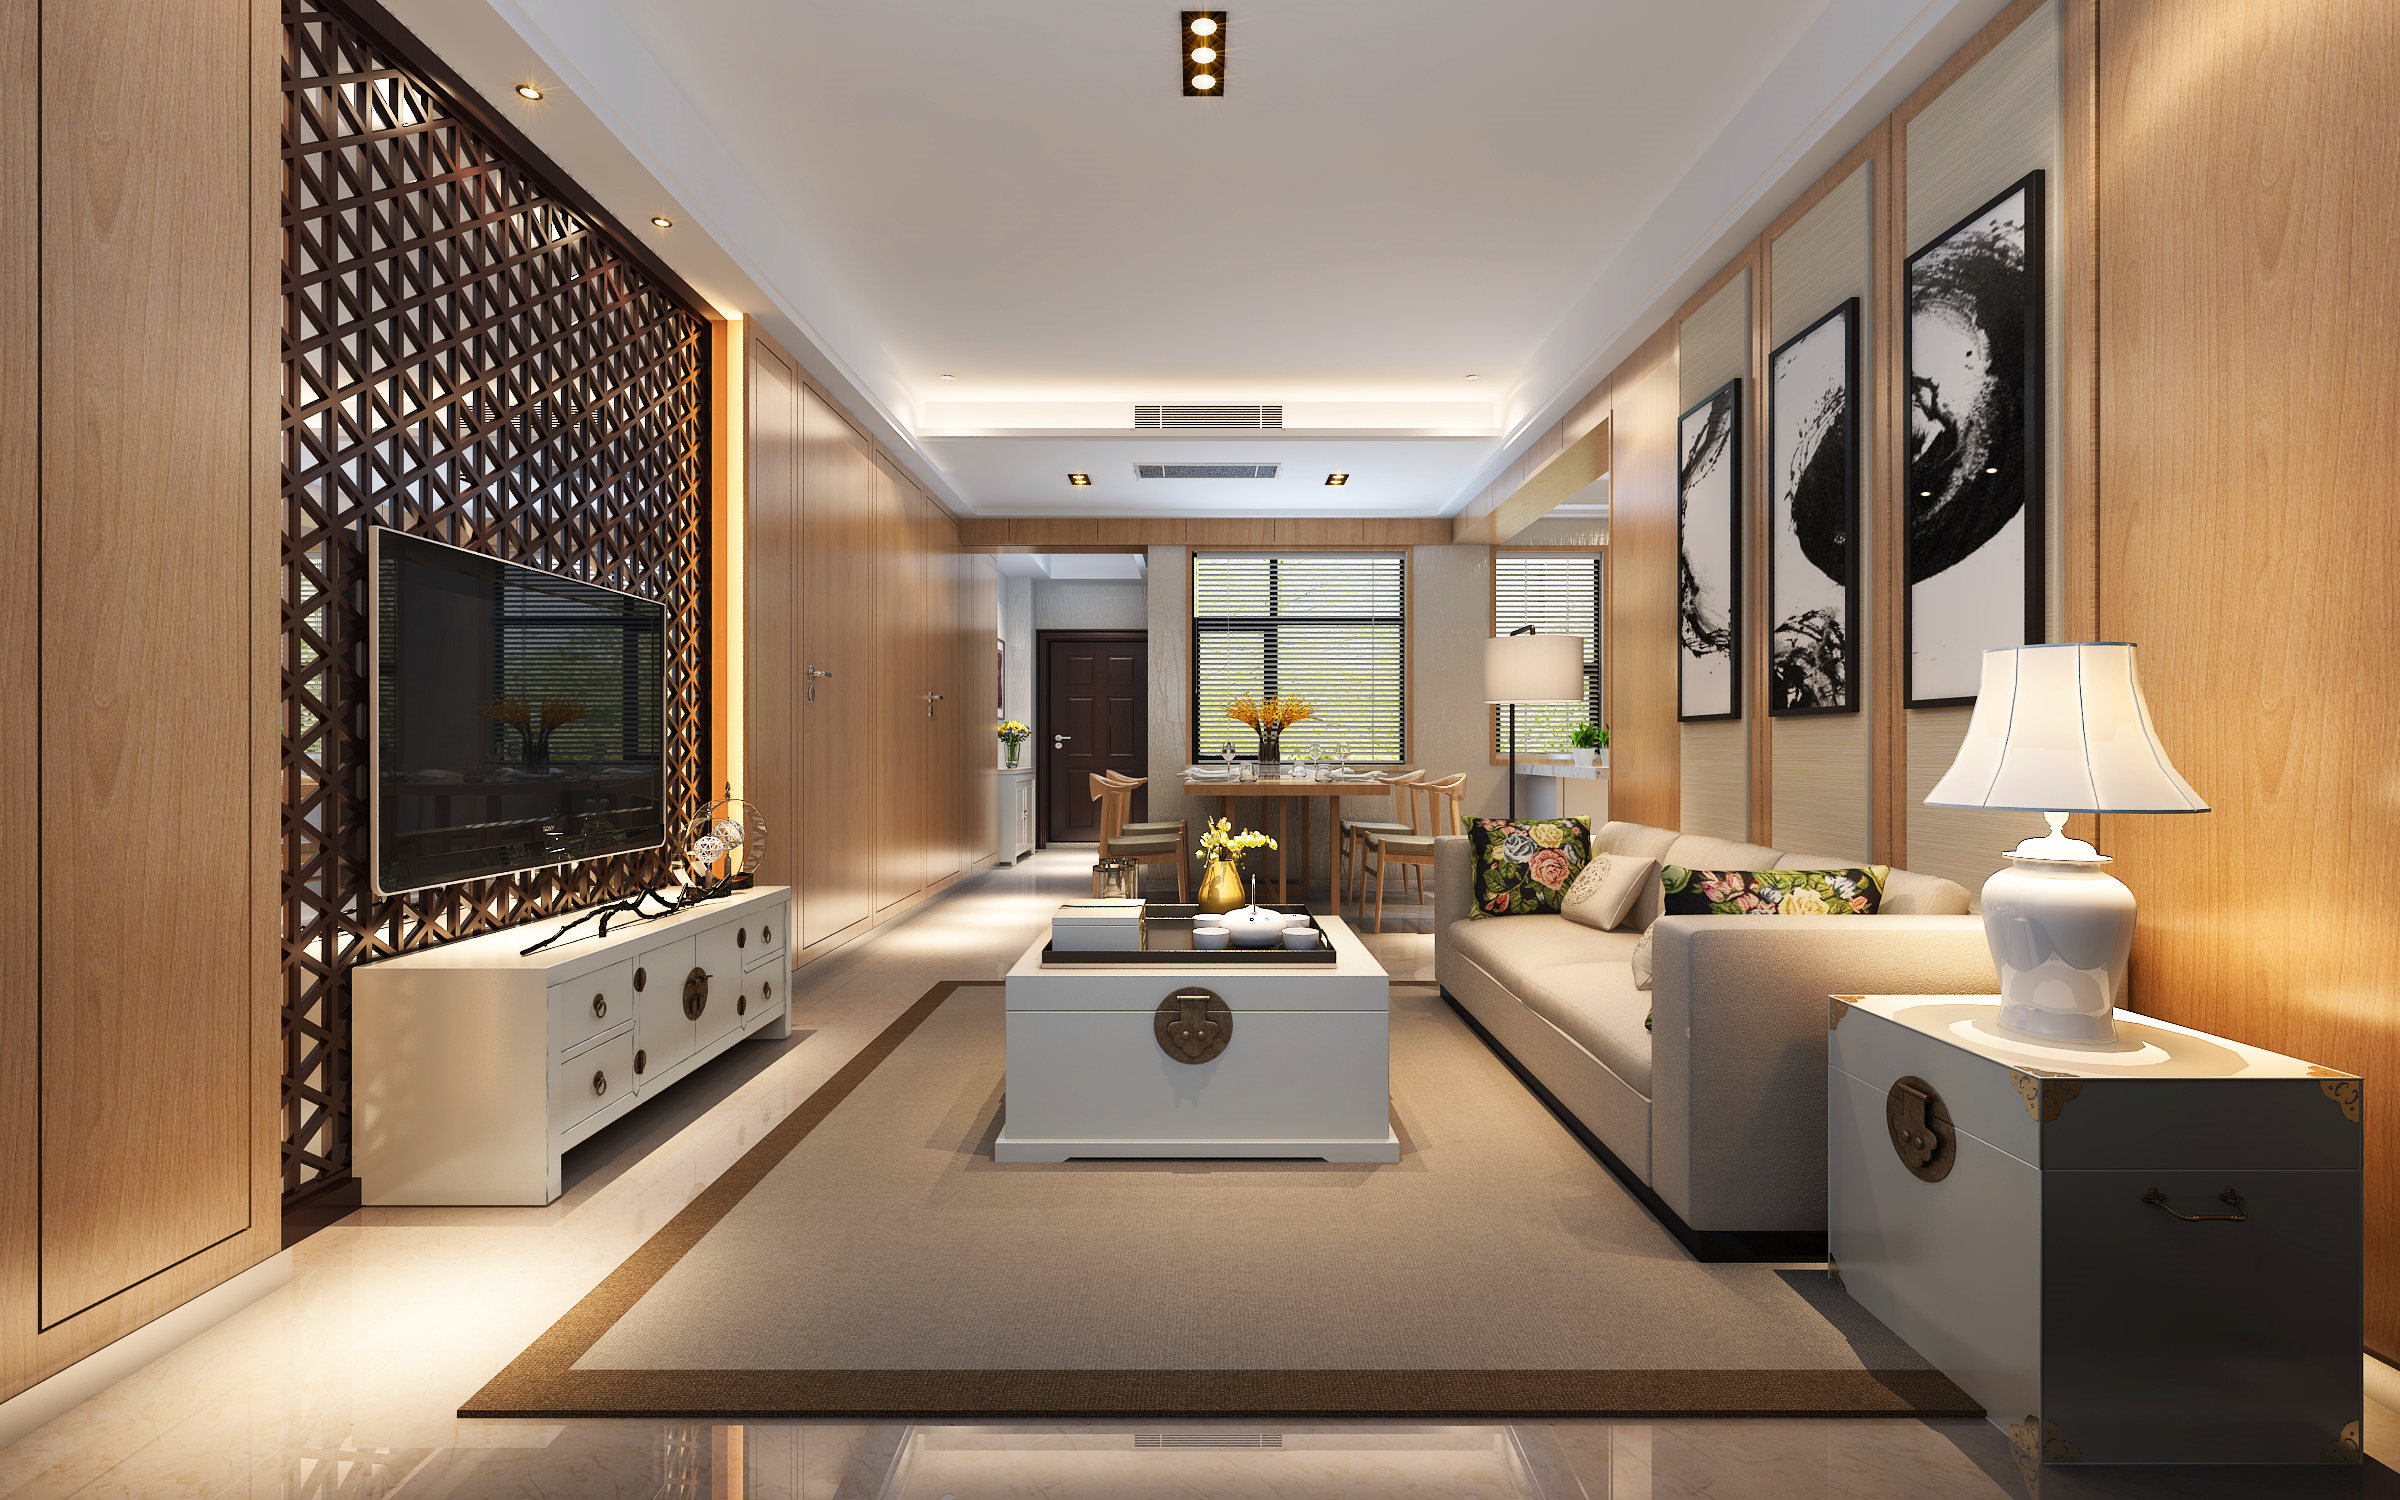 简约 二居 收纳 80后 小资 天汇设计 新中式 禅意中式 客厅图片来自游小华在《朴居》的分享